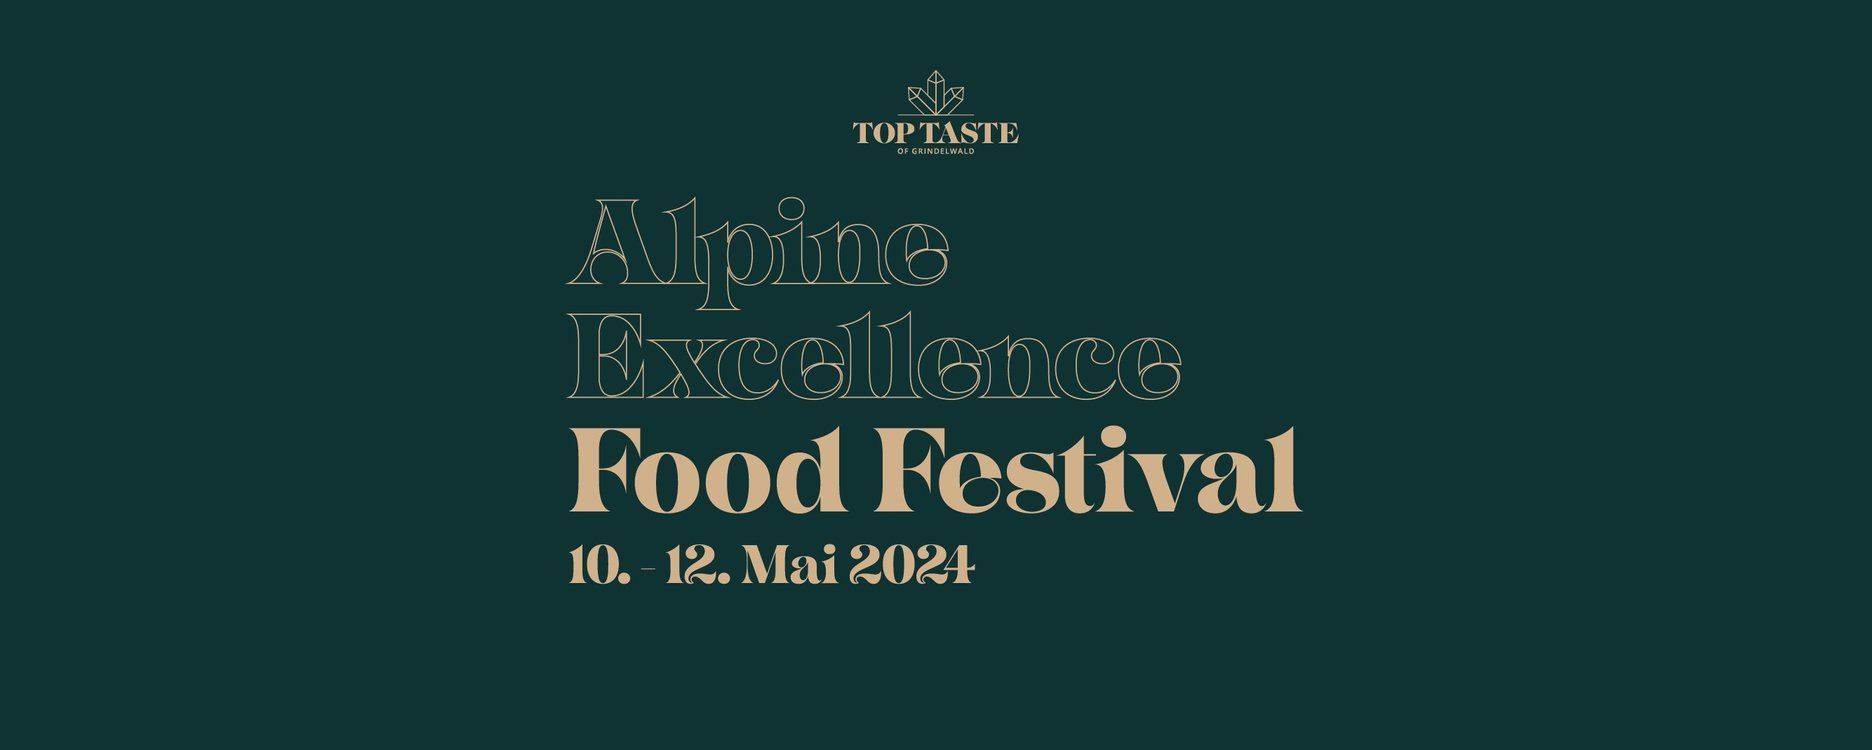 Top Taste of Grindelwald Alpine Excellence Food Festival